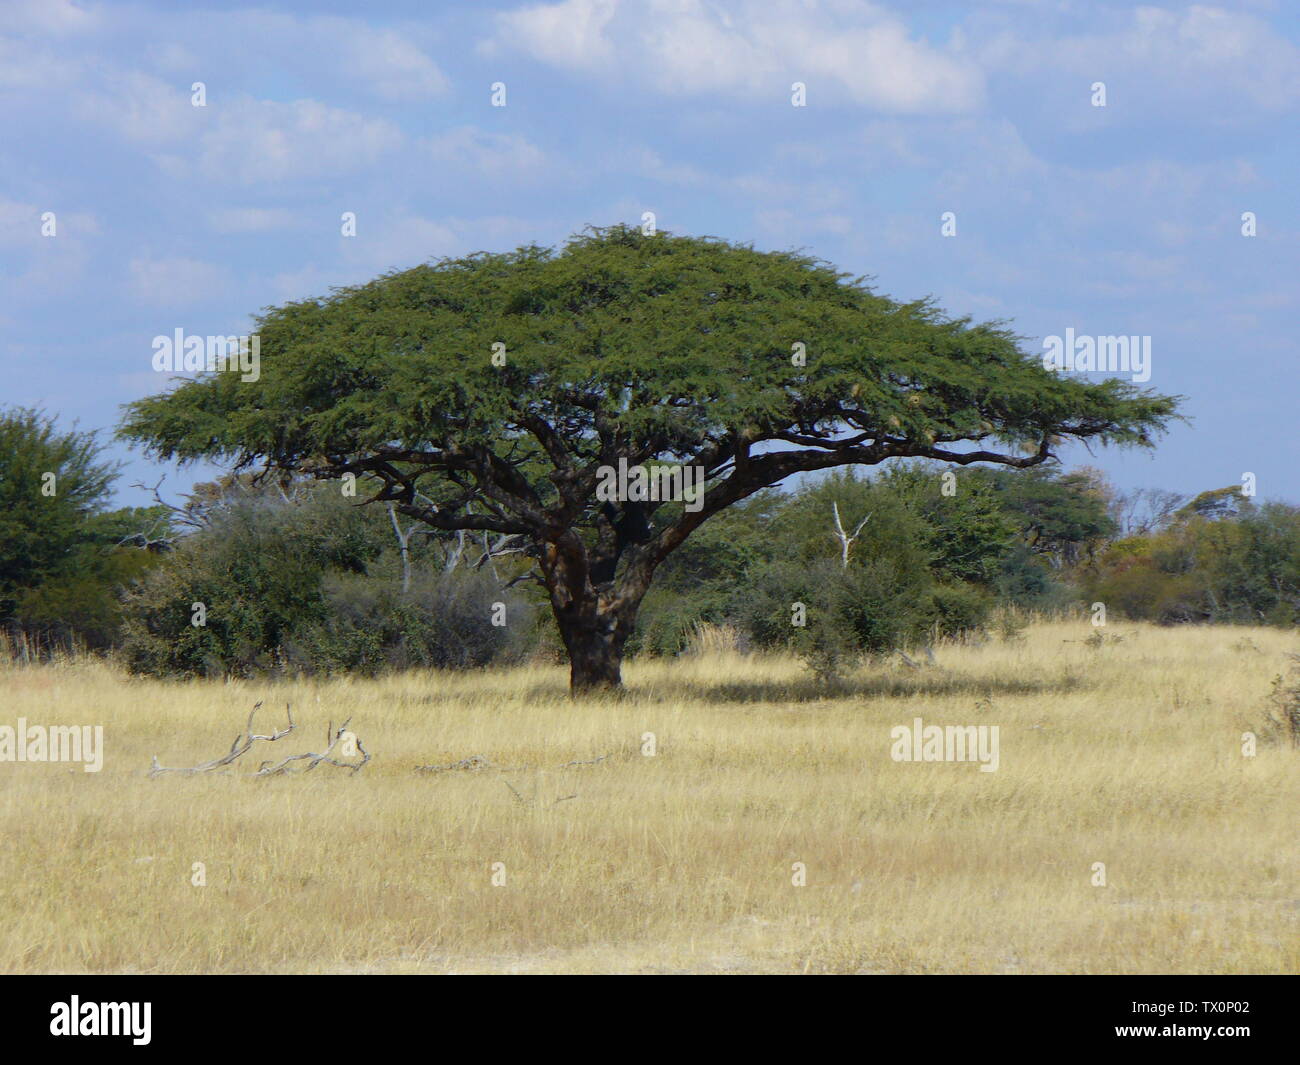 Acacia erioloba E.Mey. Afrikaans: 'N Kameeldoring conoció a KoringvoÃ«lneste naby die Botswanagrens buite Tsjelanjemba-nedersetting en Zimbabwe suid-westelike. Un árbol de espinas de Camel con nidos de Sparrow-Weaver cerca de la frontera de Botswanan en la aldea de Tshelanyemba, en el suroeste de Zimbabwe.; Fotografiado ca. 26 de mayo de 2007, 8 de mayo de 2009 (fecha de carga original); Transferido de en.pedia a Commons por Quadell utilizando CommonsHelper.; I (usuario Neelix) soy el creador de esta foto, y mantener los derechos de autor. Lo exito al dominio público; Foto de stock